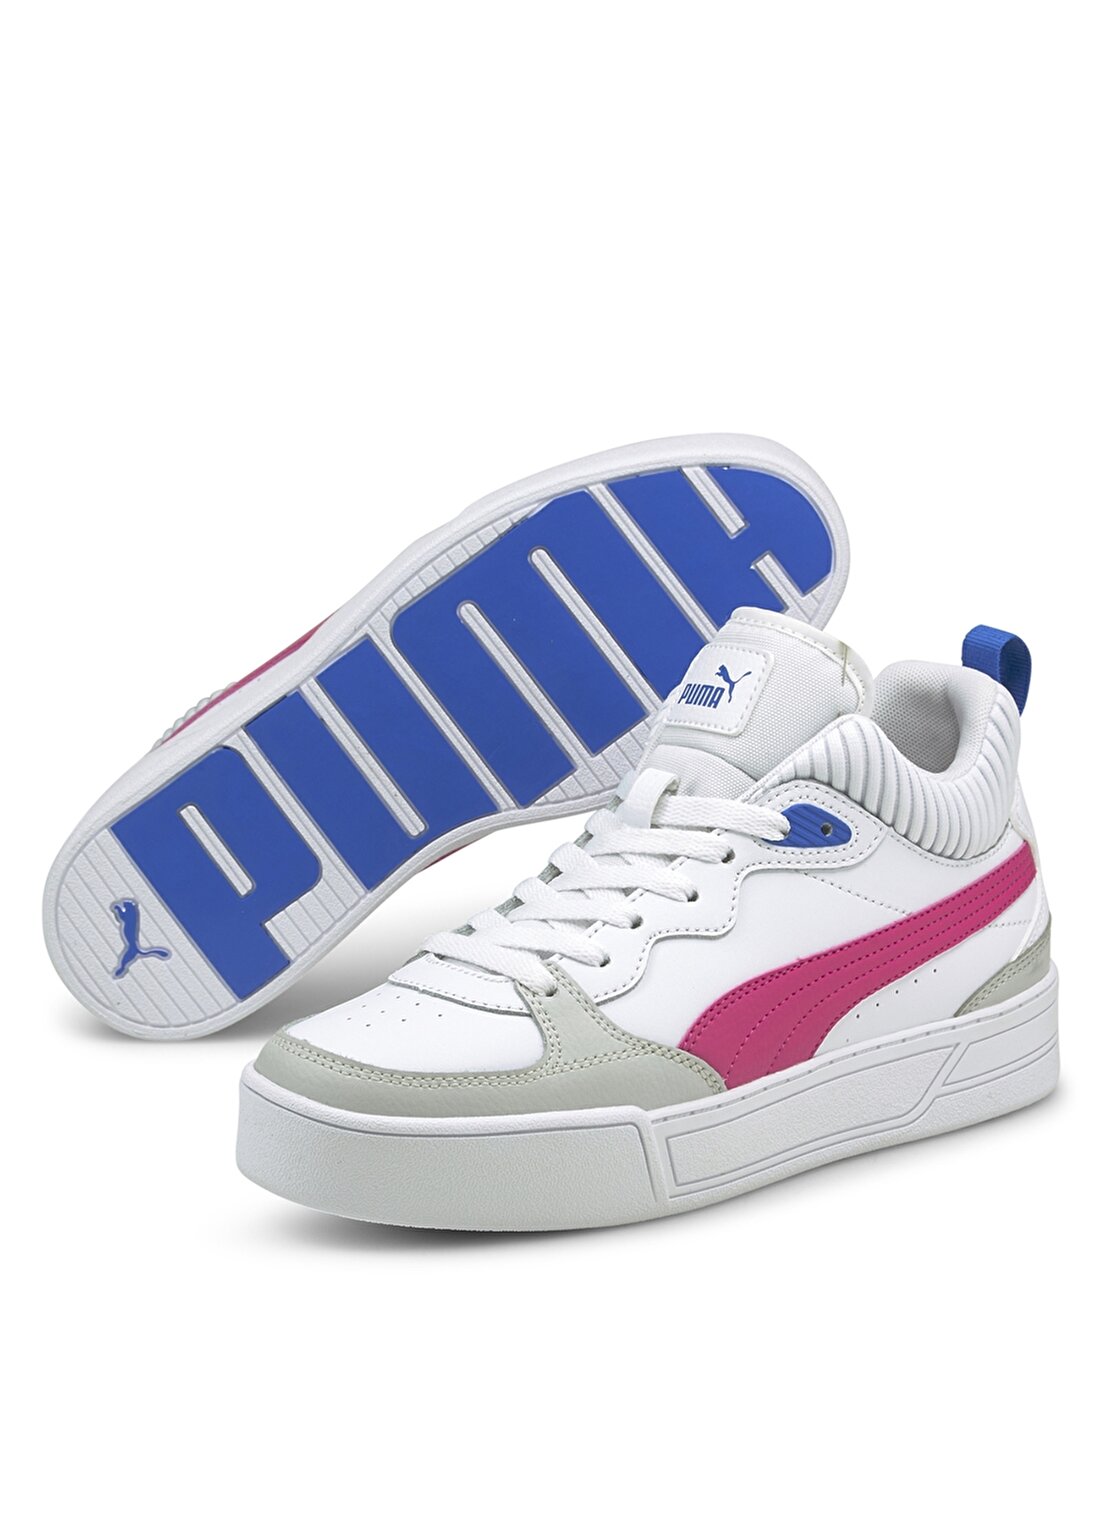 Puma 38074903 Skye Demi Beyaz - Mor Kadın Lifestyle Ayakkabı